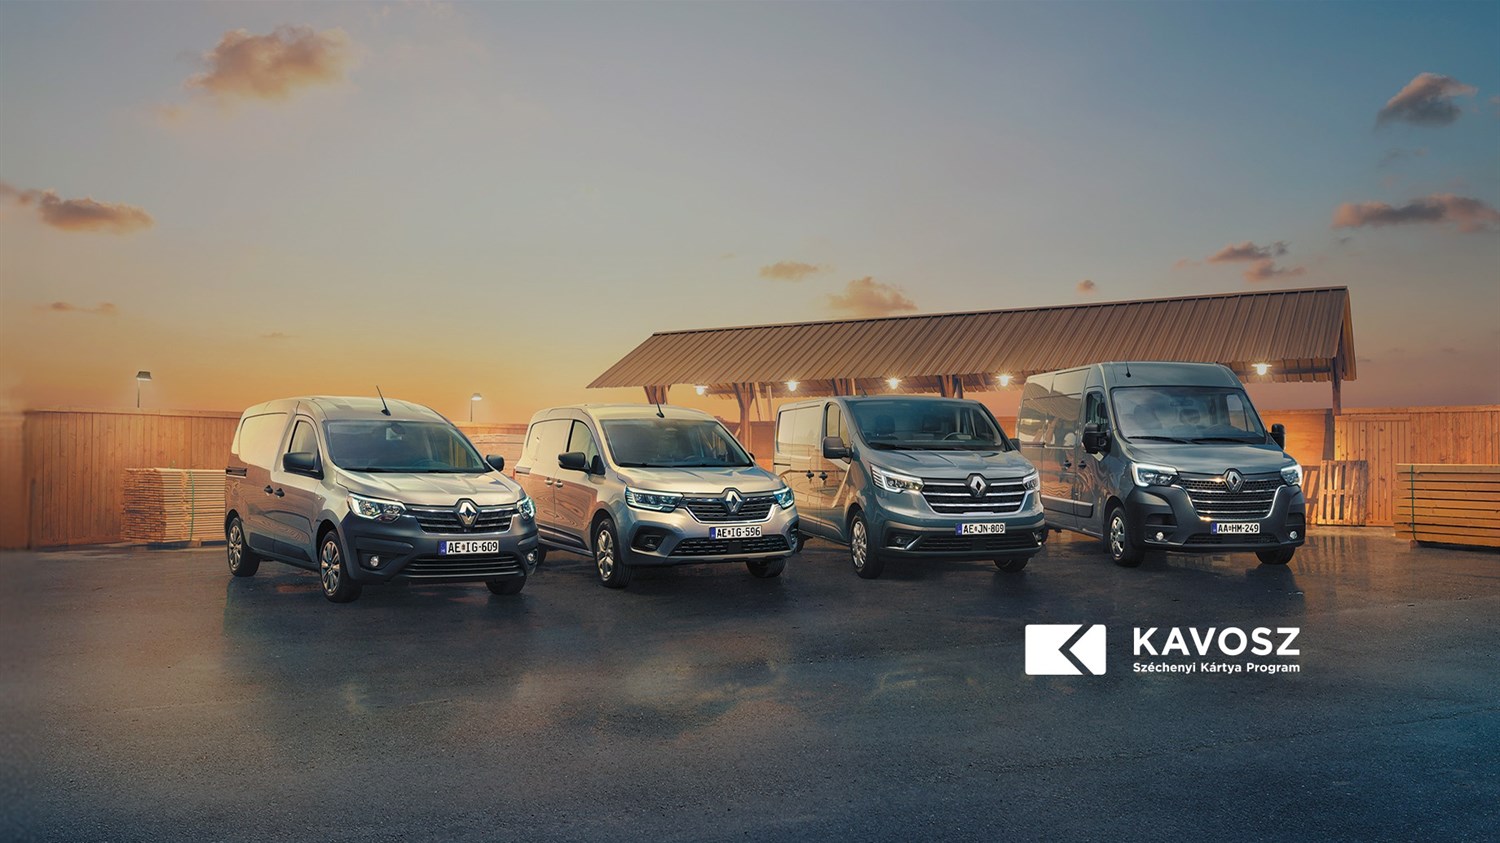 Renault haszongépjármű finanszírozás vállakozások számára állami támogatással Széchenyi Lízing MAX konstrukcióban